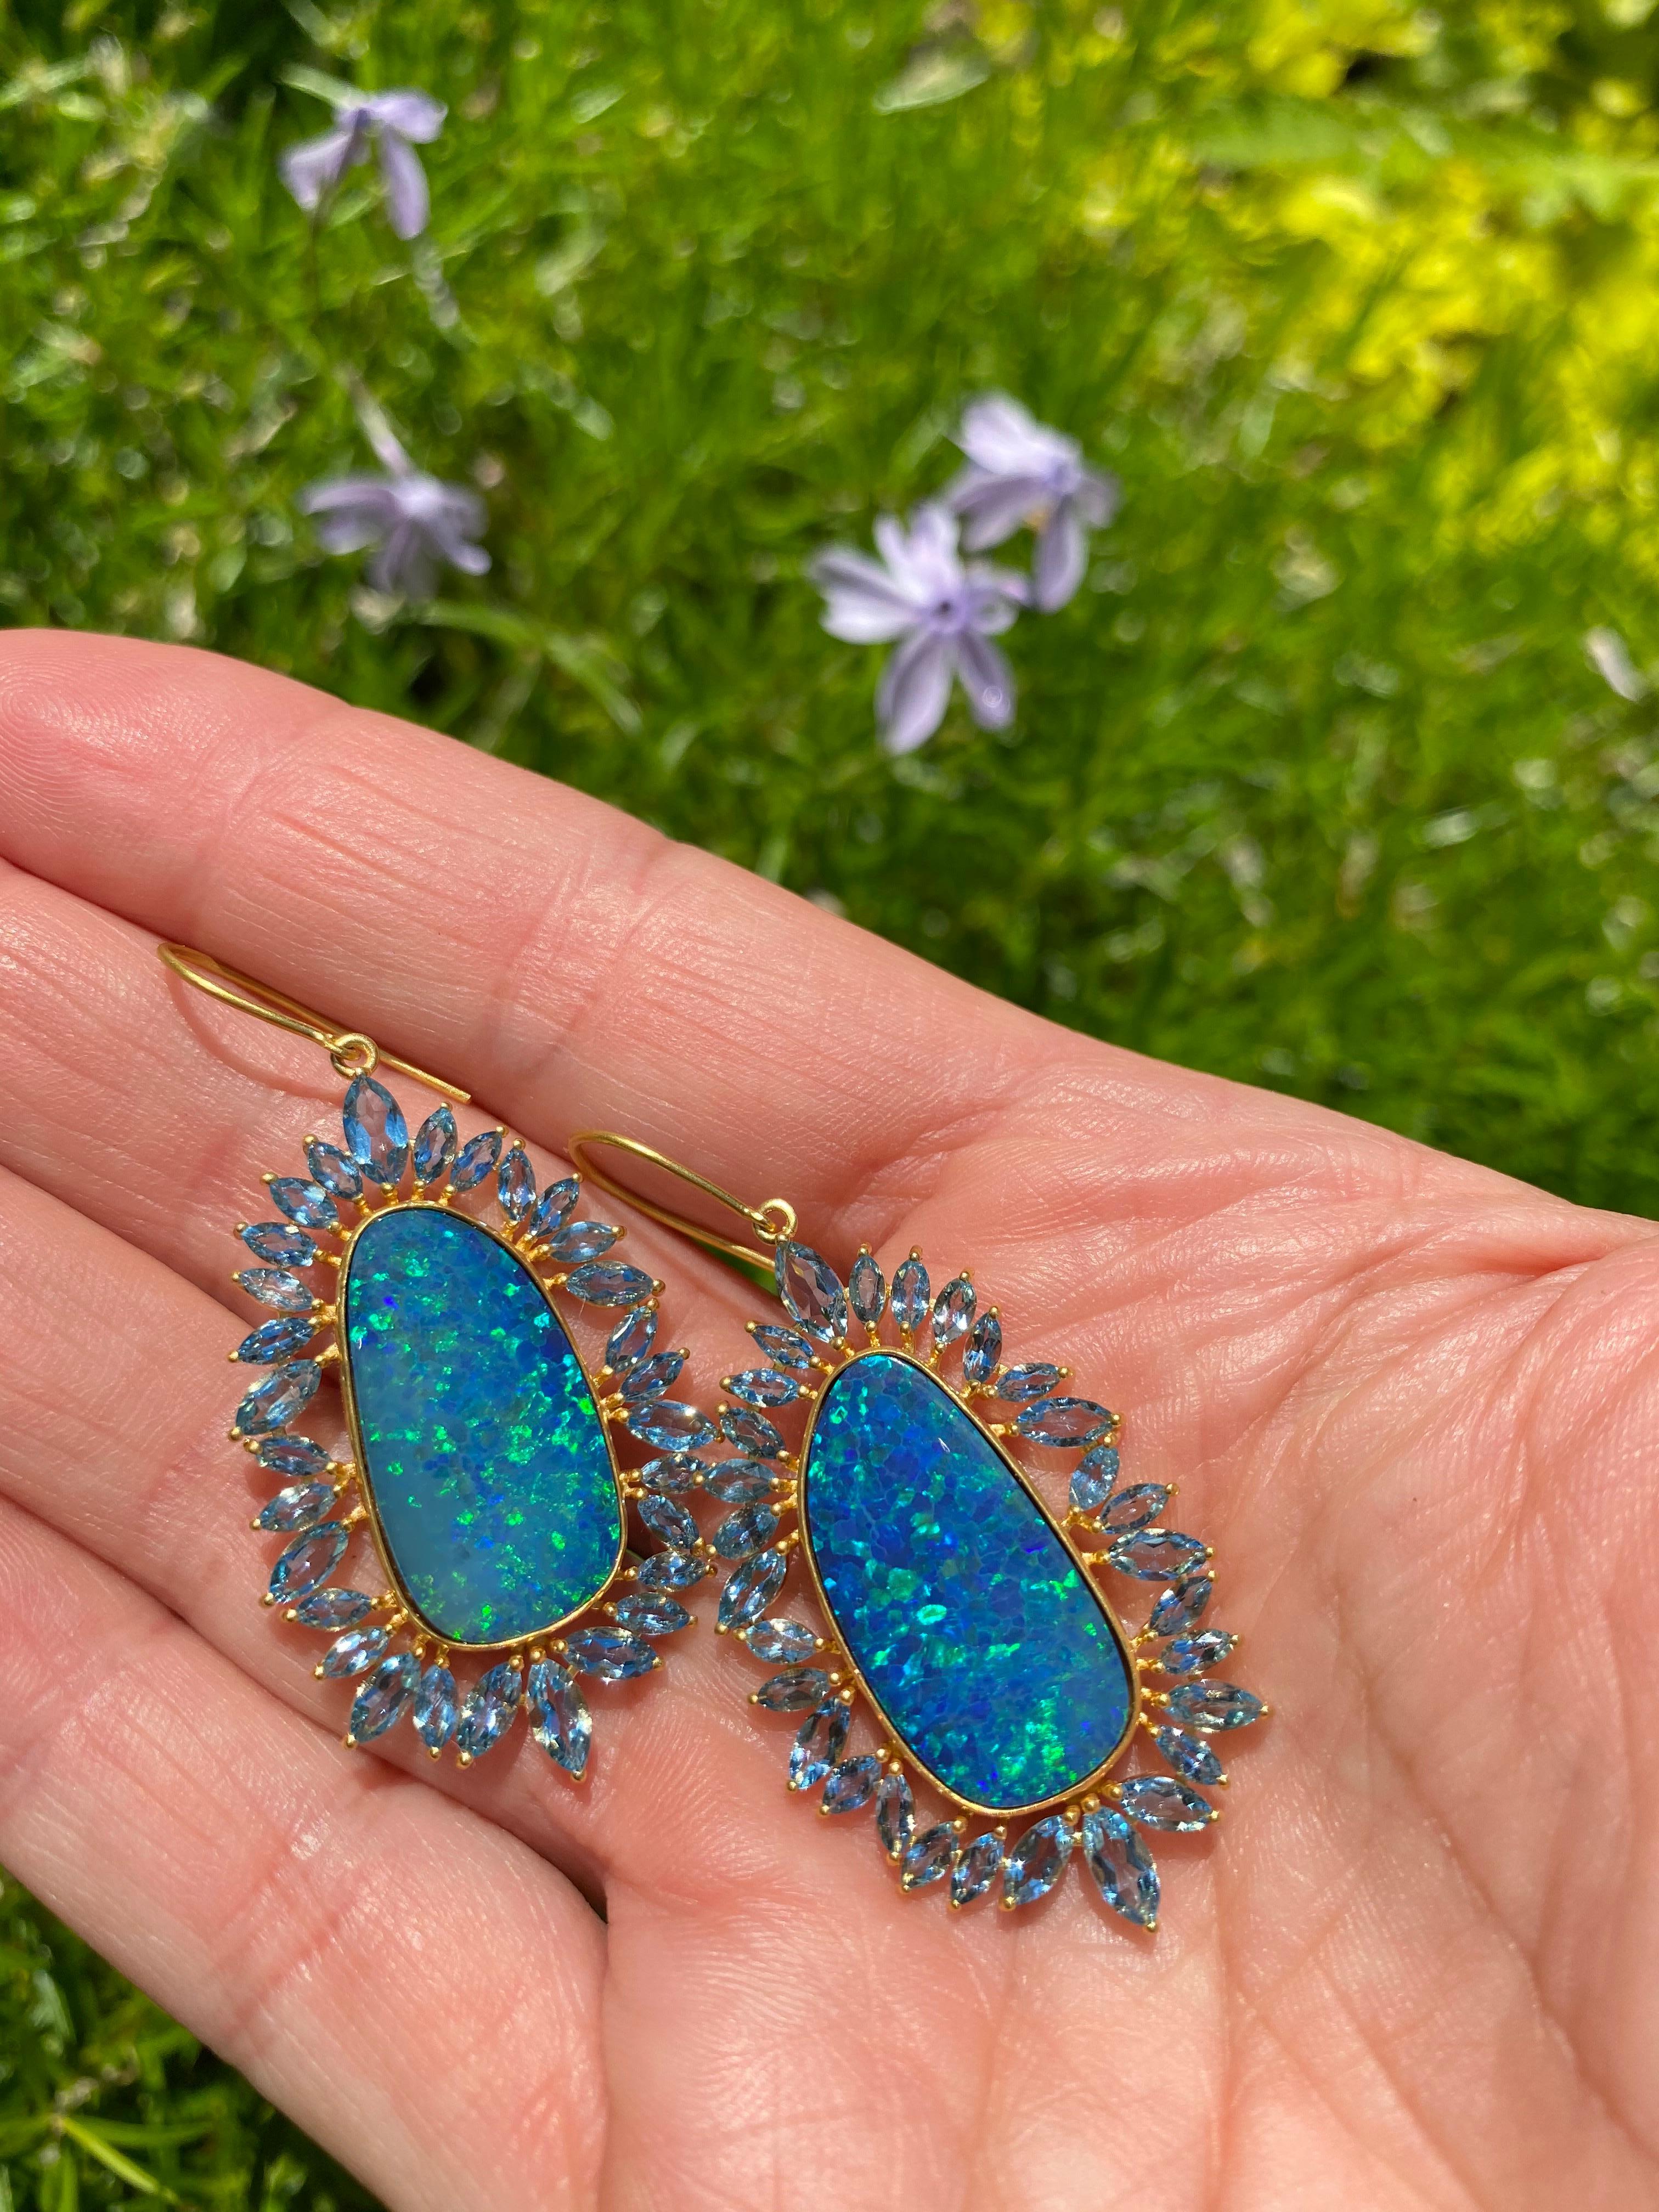 opal and aquamarine earrings